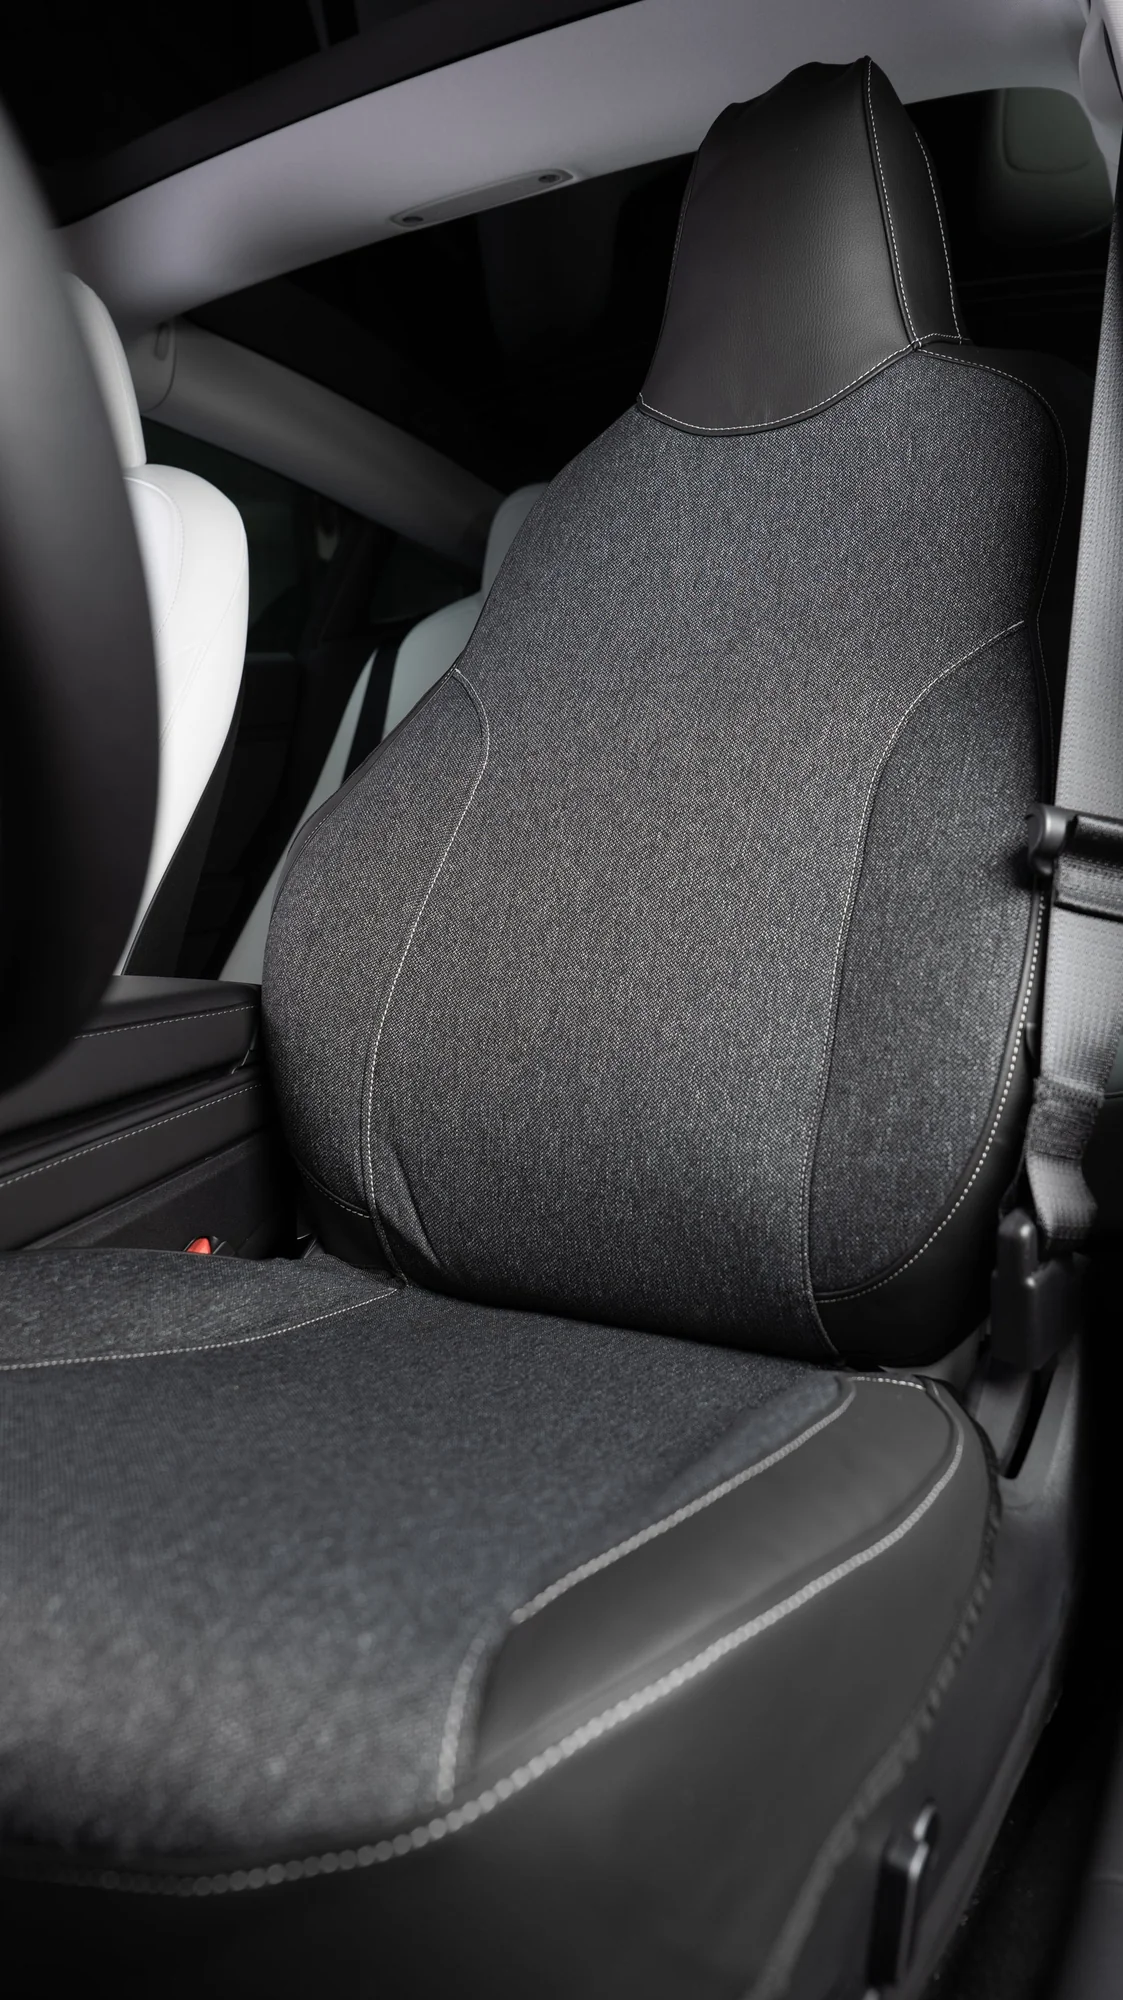 Stijlvolle, op maat gemaakte autostoelhoes voor Tesla Model 3/Y, met robuuste stof en veganleer voor optimale bescherming en comfort, waterafstotend en duurzaam.